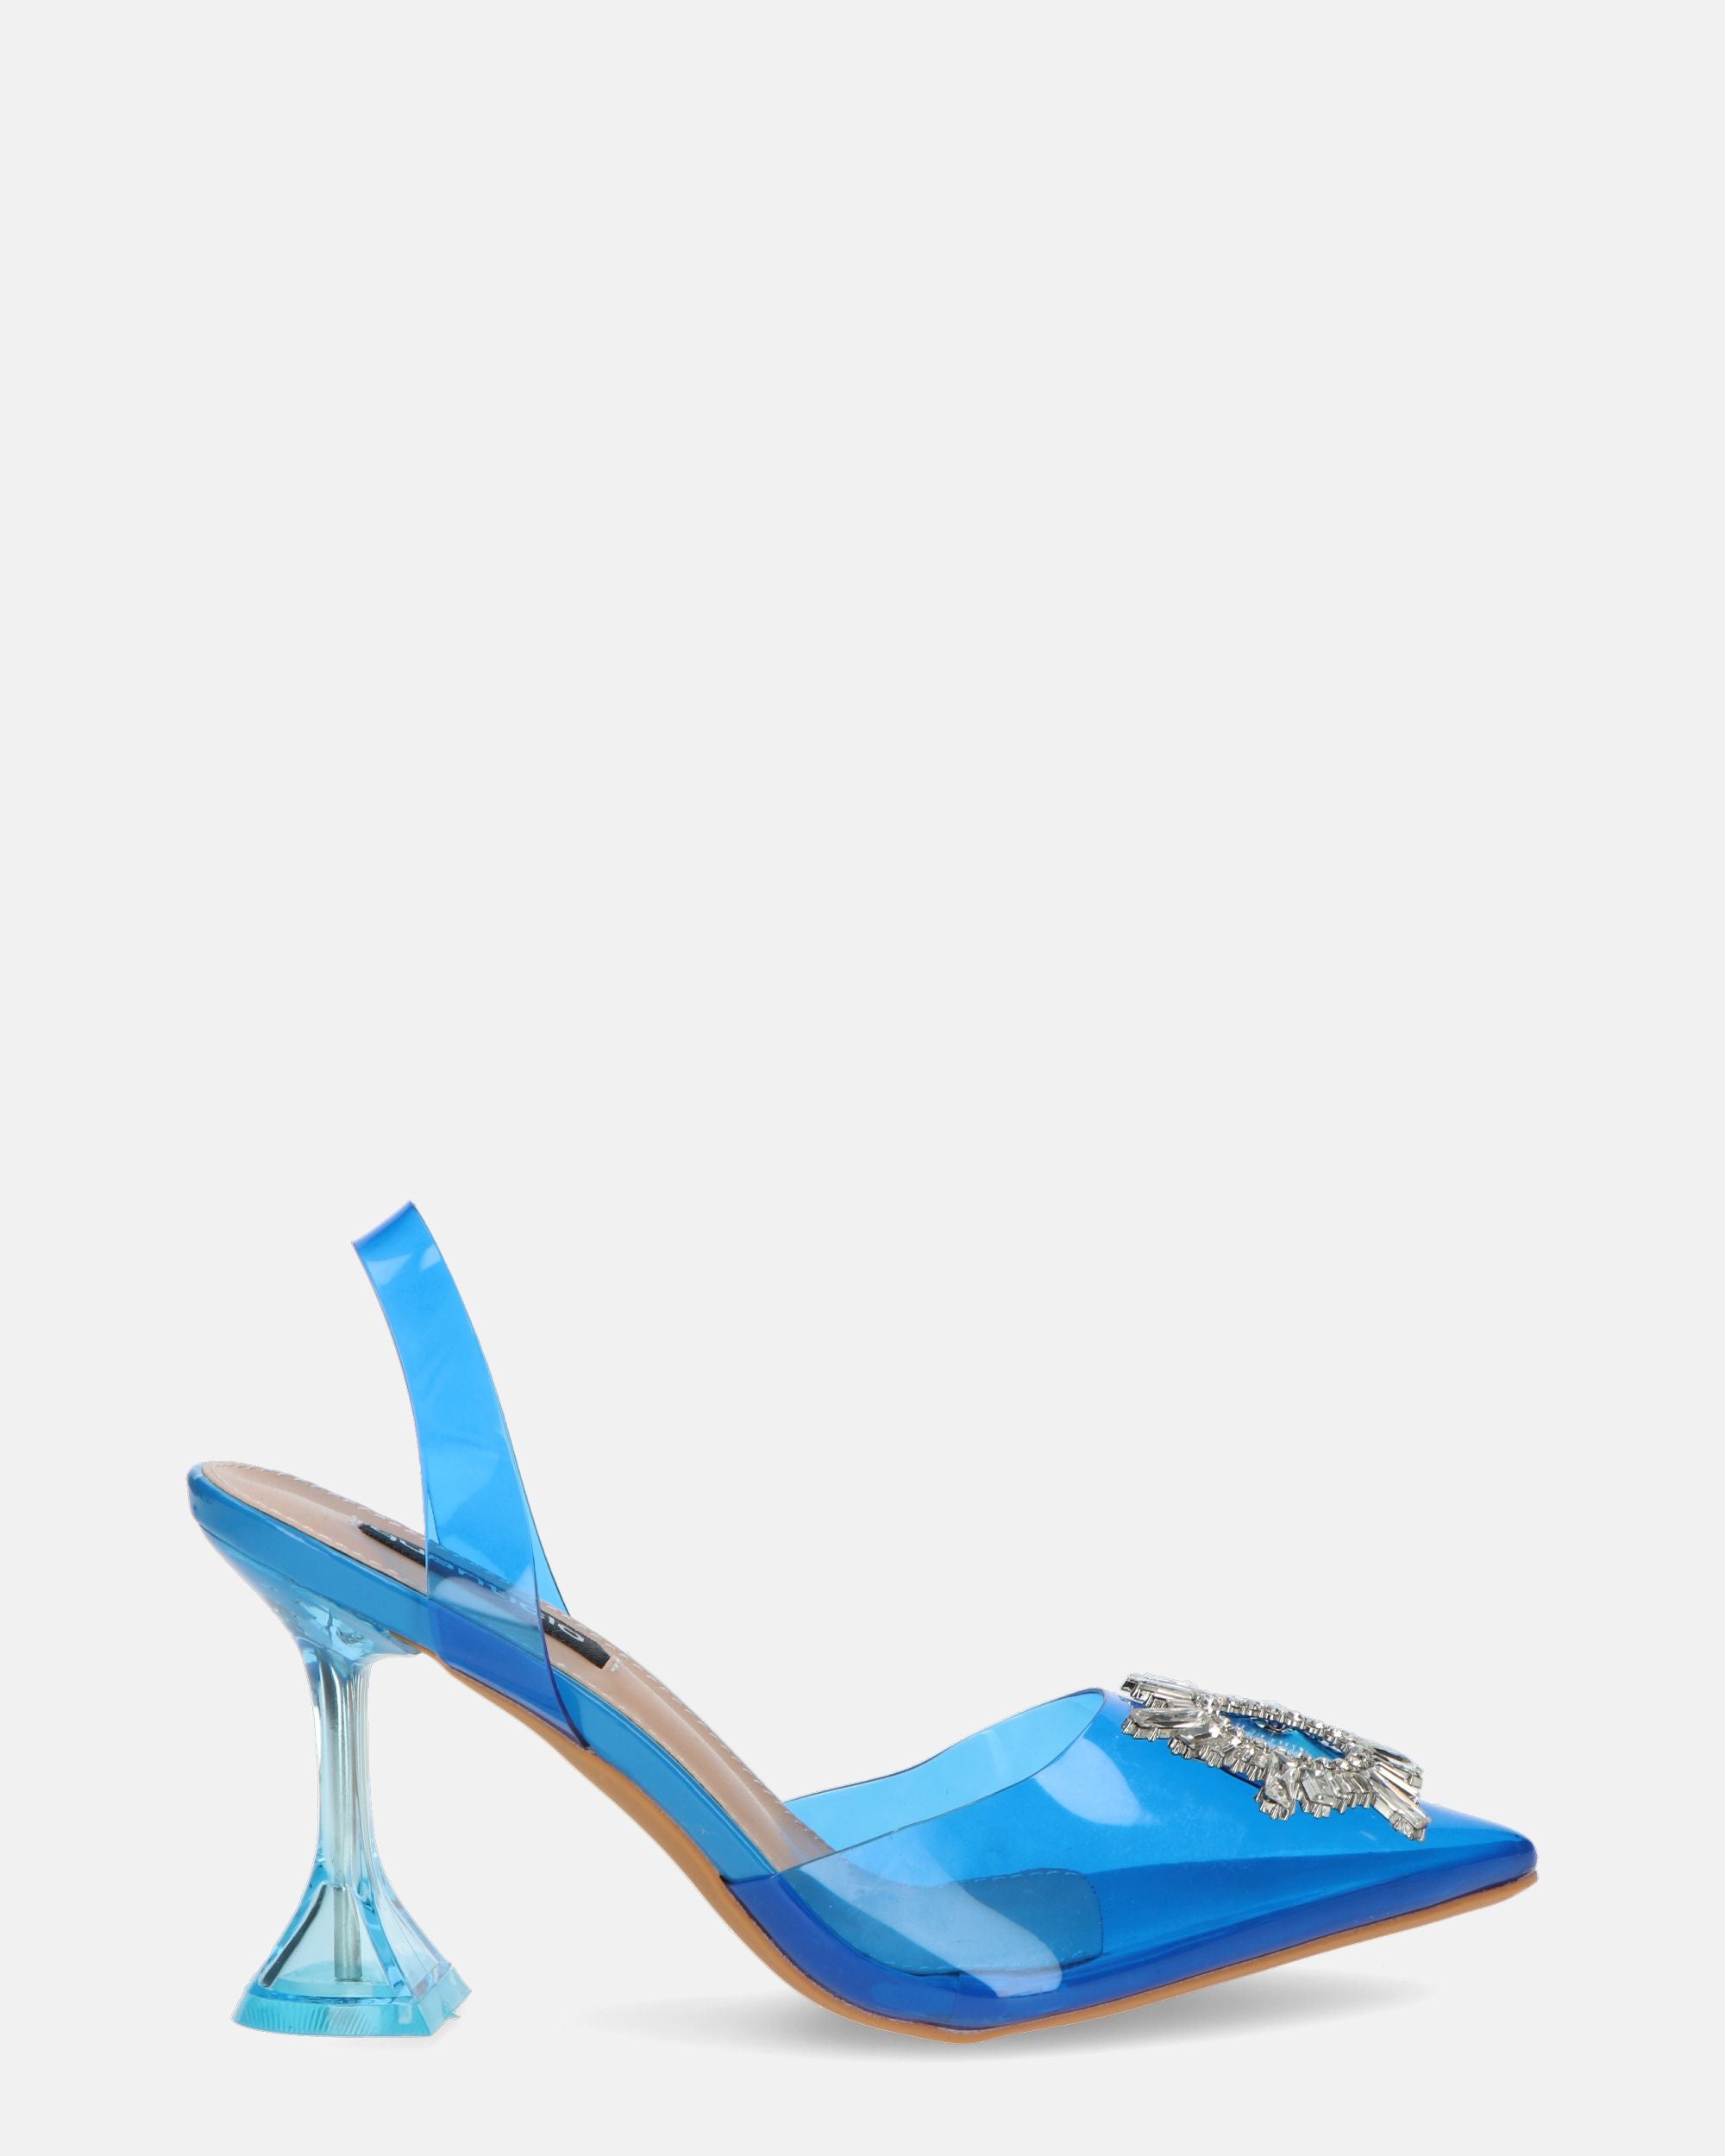 KENAN - scarpe in perspex blu con decorazione di gemme in punta